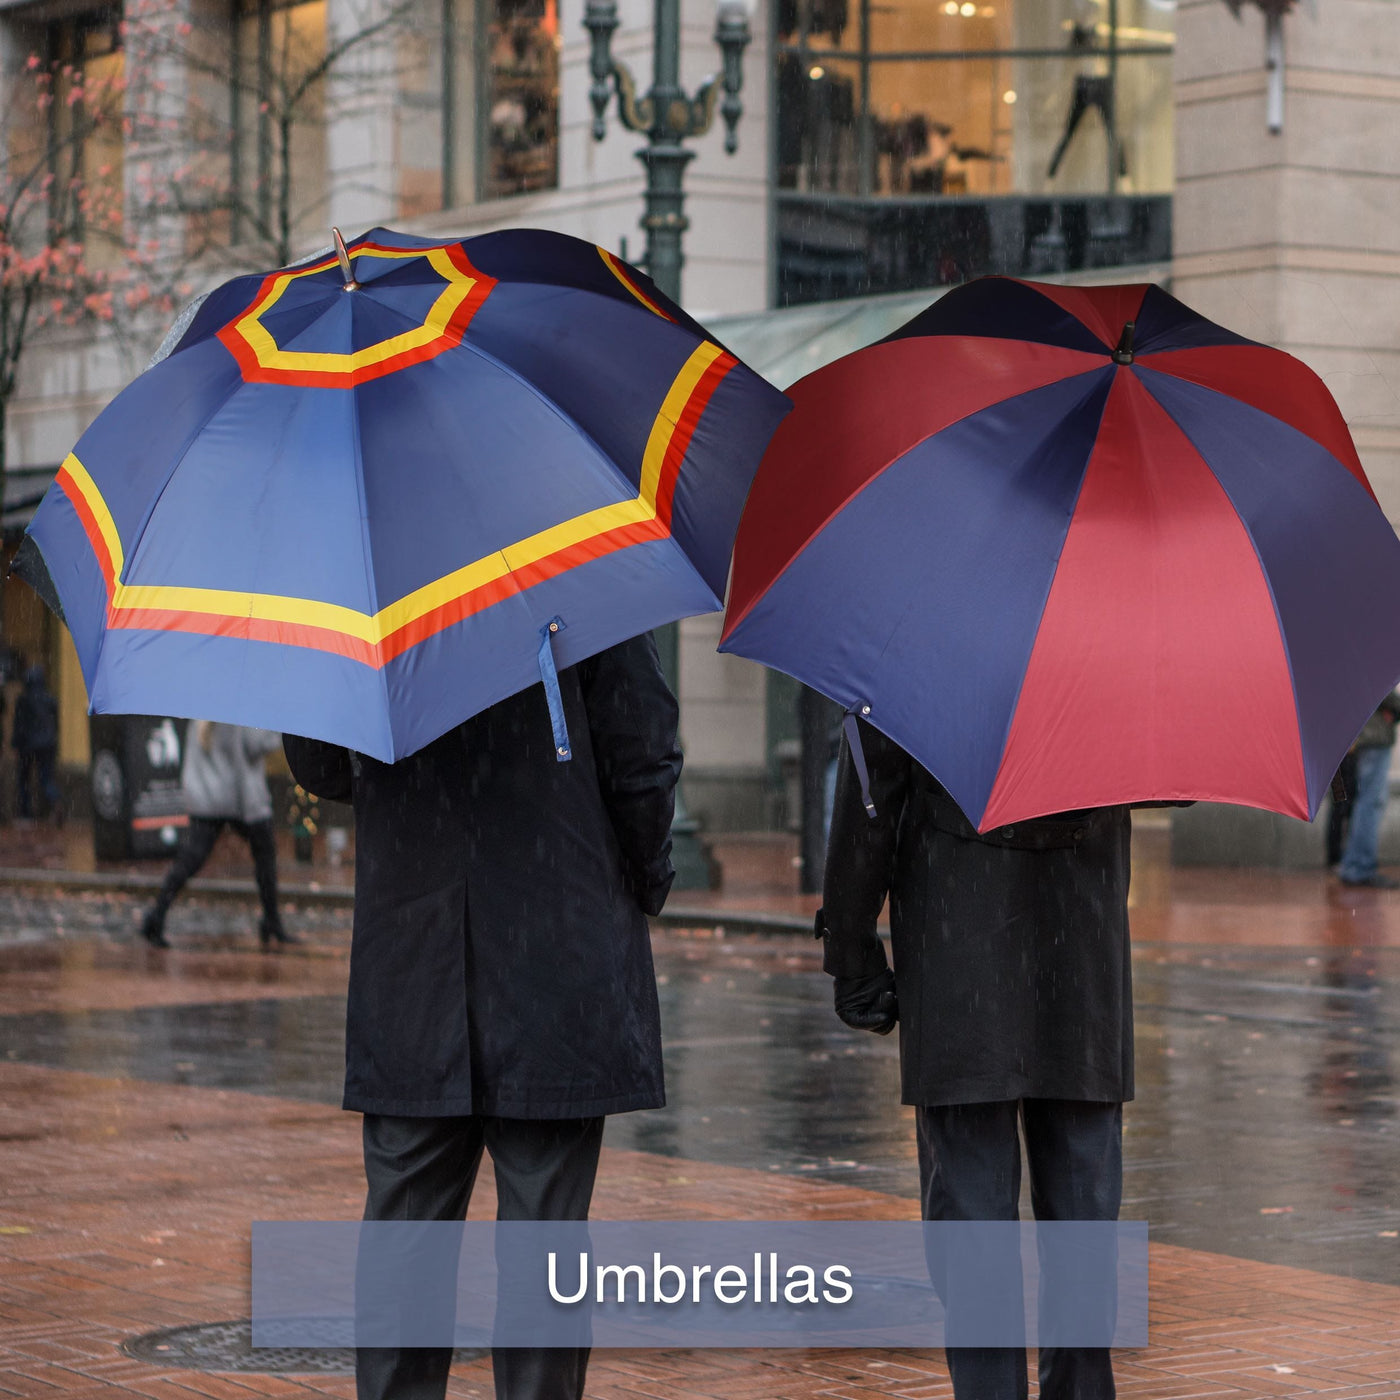 Regimental Umbrellas, RLC Umbrella, REME Umbrella, Fleet Air Arm Umbrella, Brigade of Guards Umbrella, Regiment Umbrella